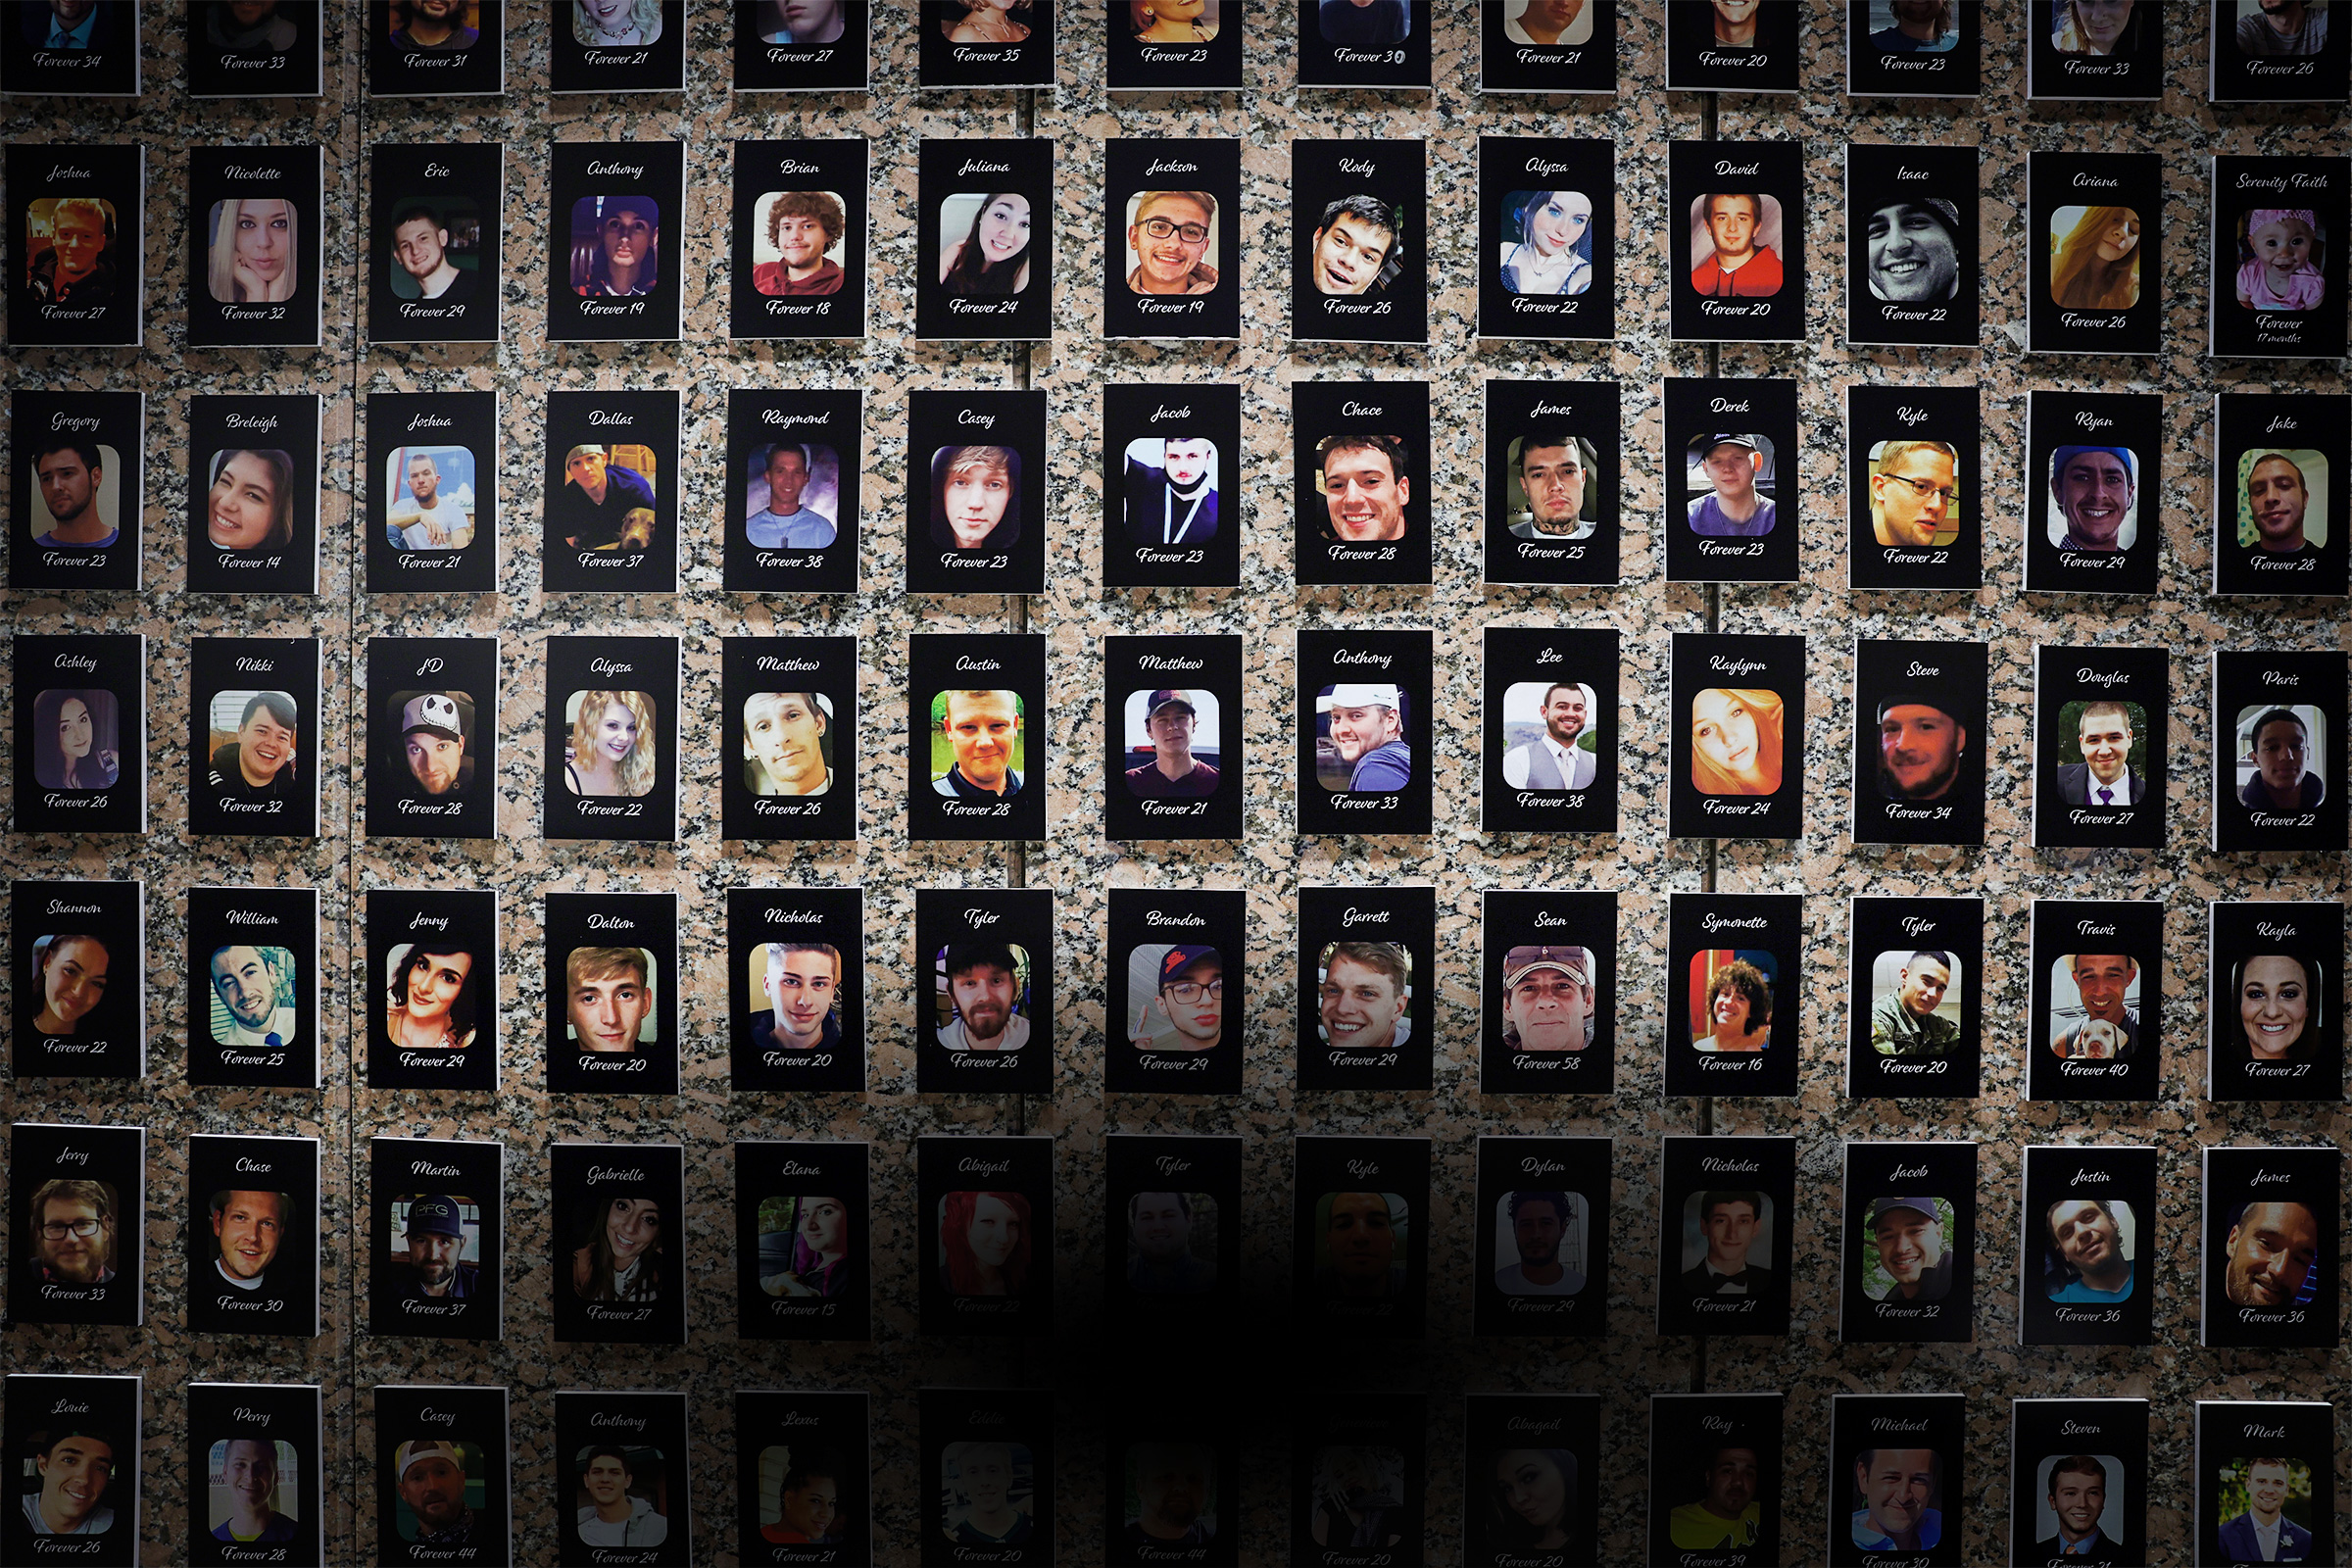 Hình ảnh của các nạn nhân fentanyl được trưng bày tại Đài tưởng niệm The Faces of Fentanyl tại trụ sở Cục Quản lý Thực thi Ma túy Hoa Kỳ ở Arlington, Virginia , hôm 27/09/2022. (Ảnh: Alex Wong/Getty Images)